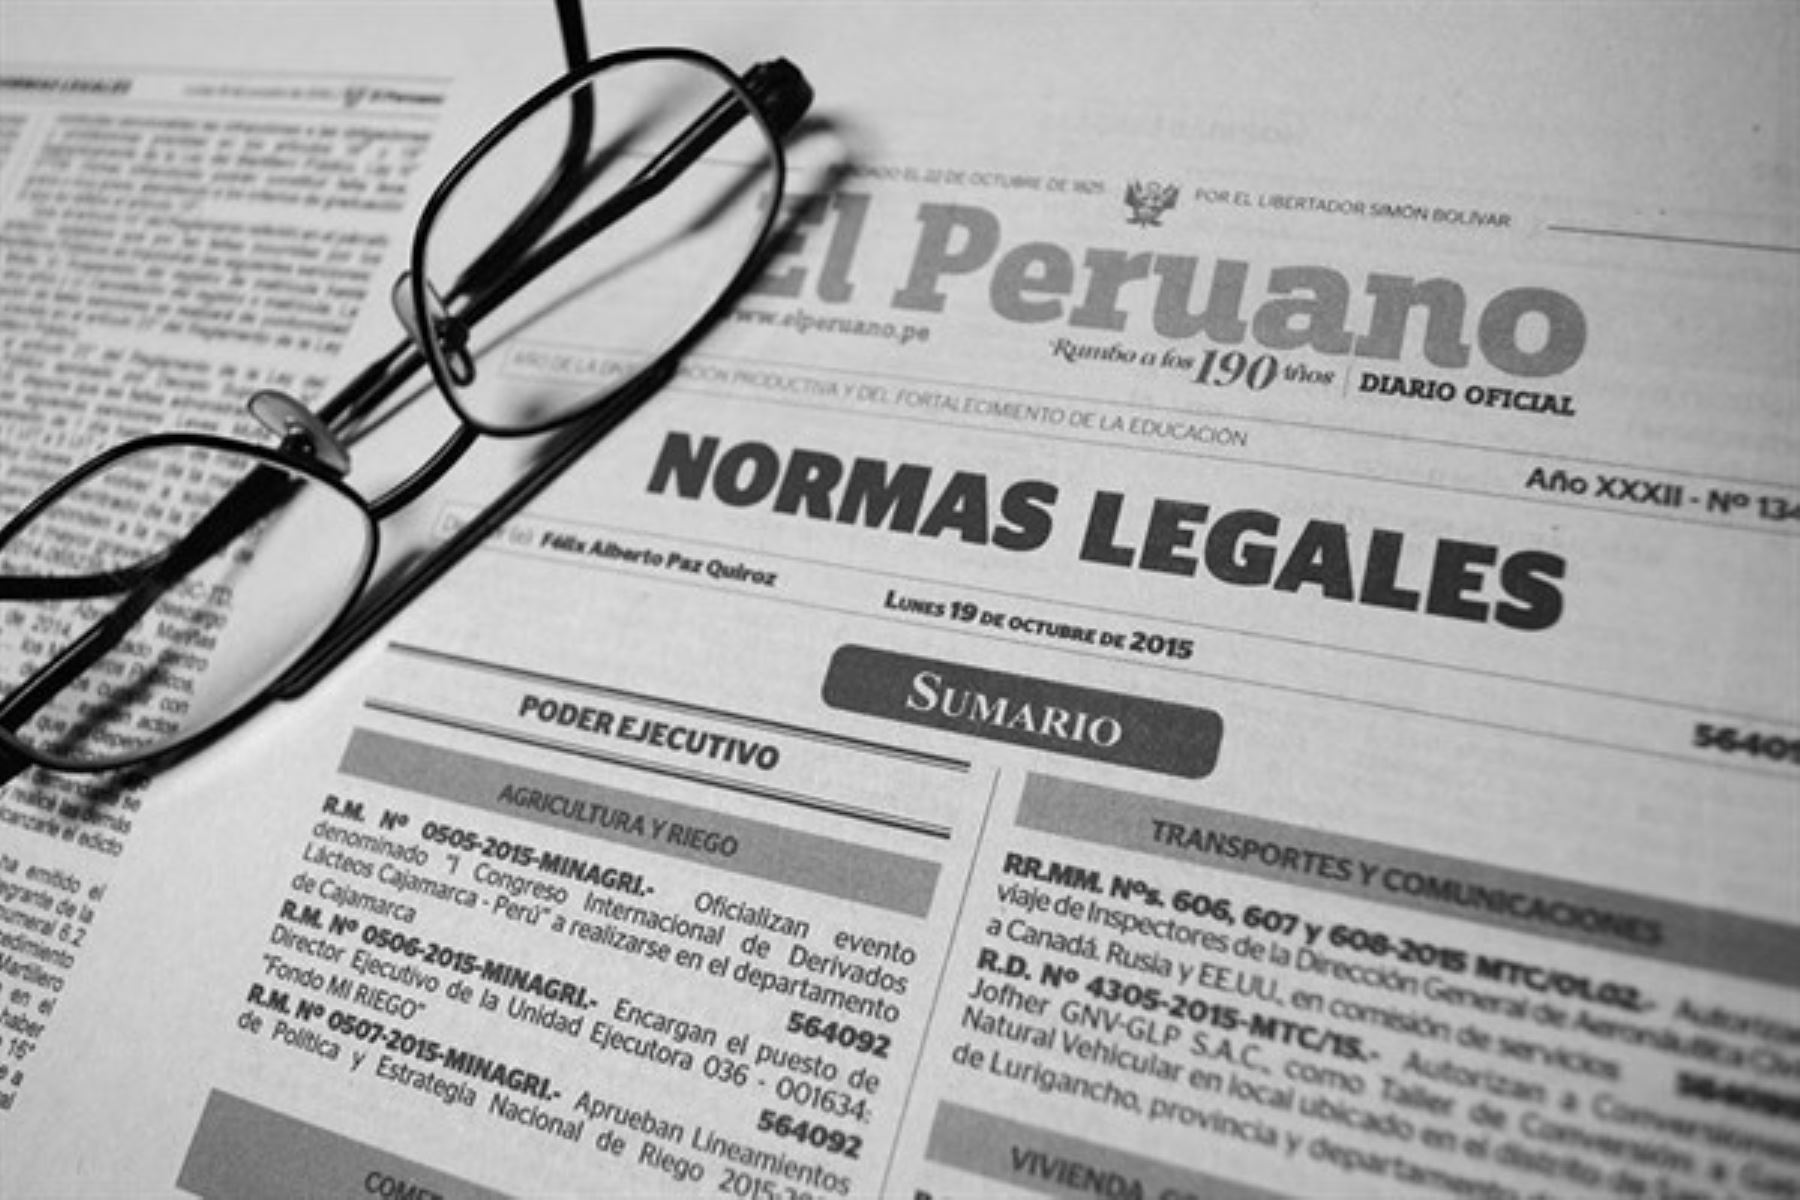 Normas Legales: ratifican acuerdo de cooperación anticorrupción entre el Perú y la OEA